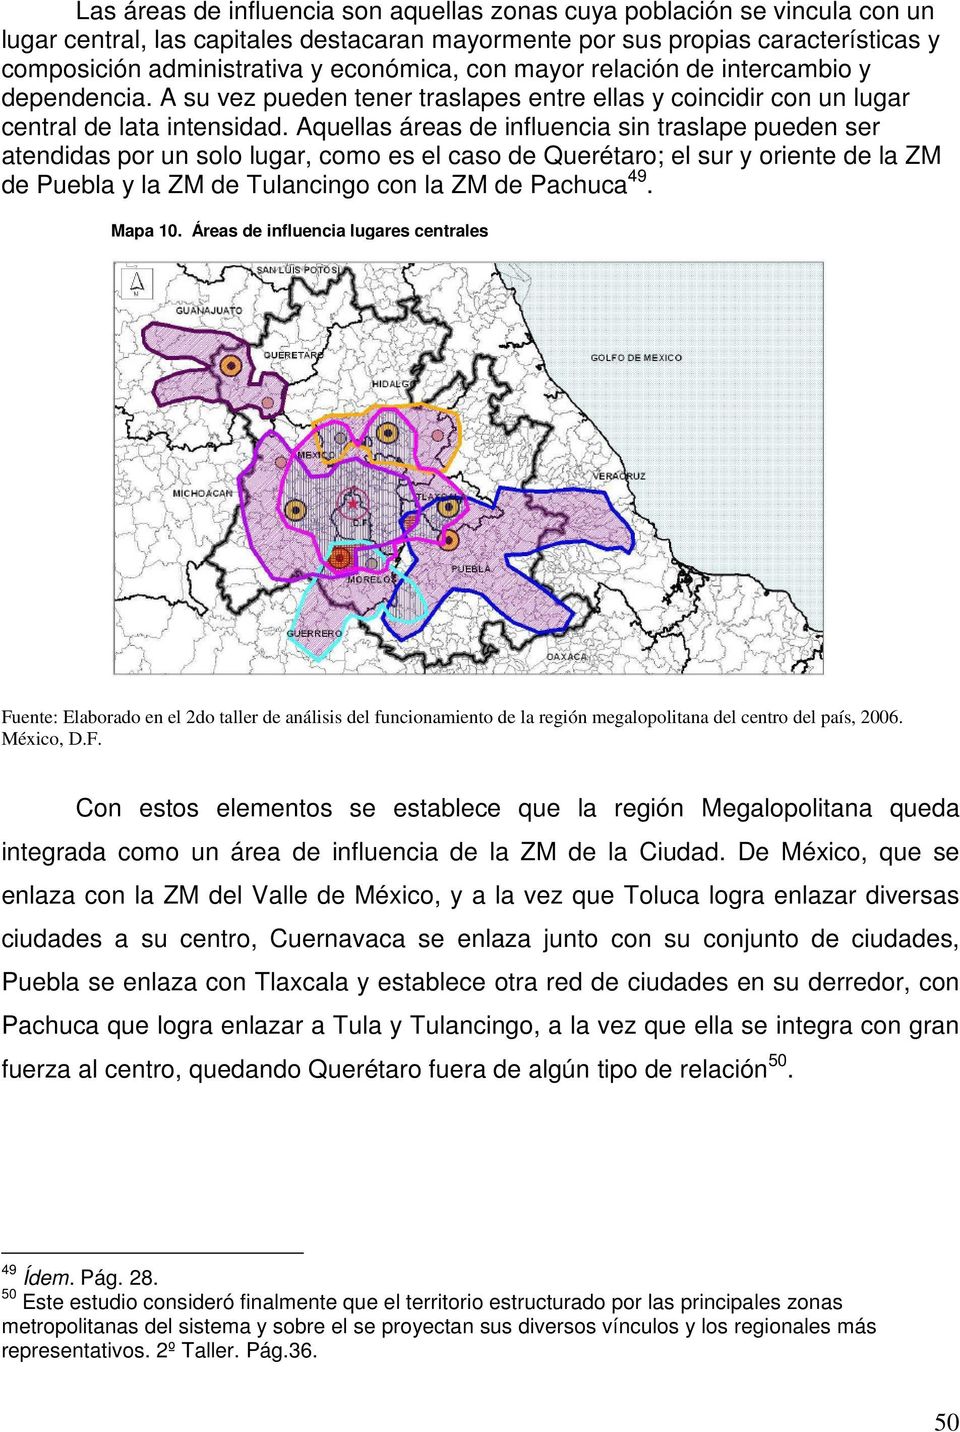 Aquellas áreas de influencia sin traslape pueden ser atendidas por un solo lugar, como es el caso de Querétaro; el sur y oriente de la ZM de Puebla y la ZM de Tulancingo con la ZM de Pachuca 49.